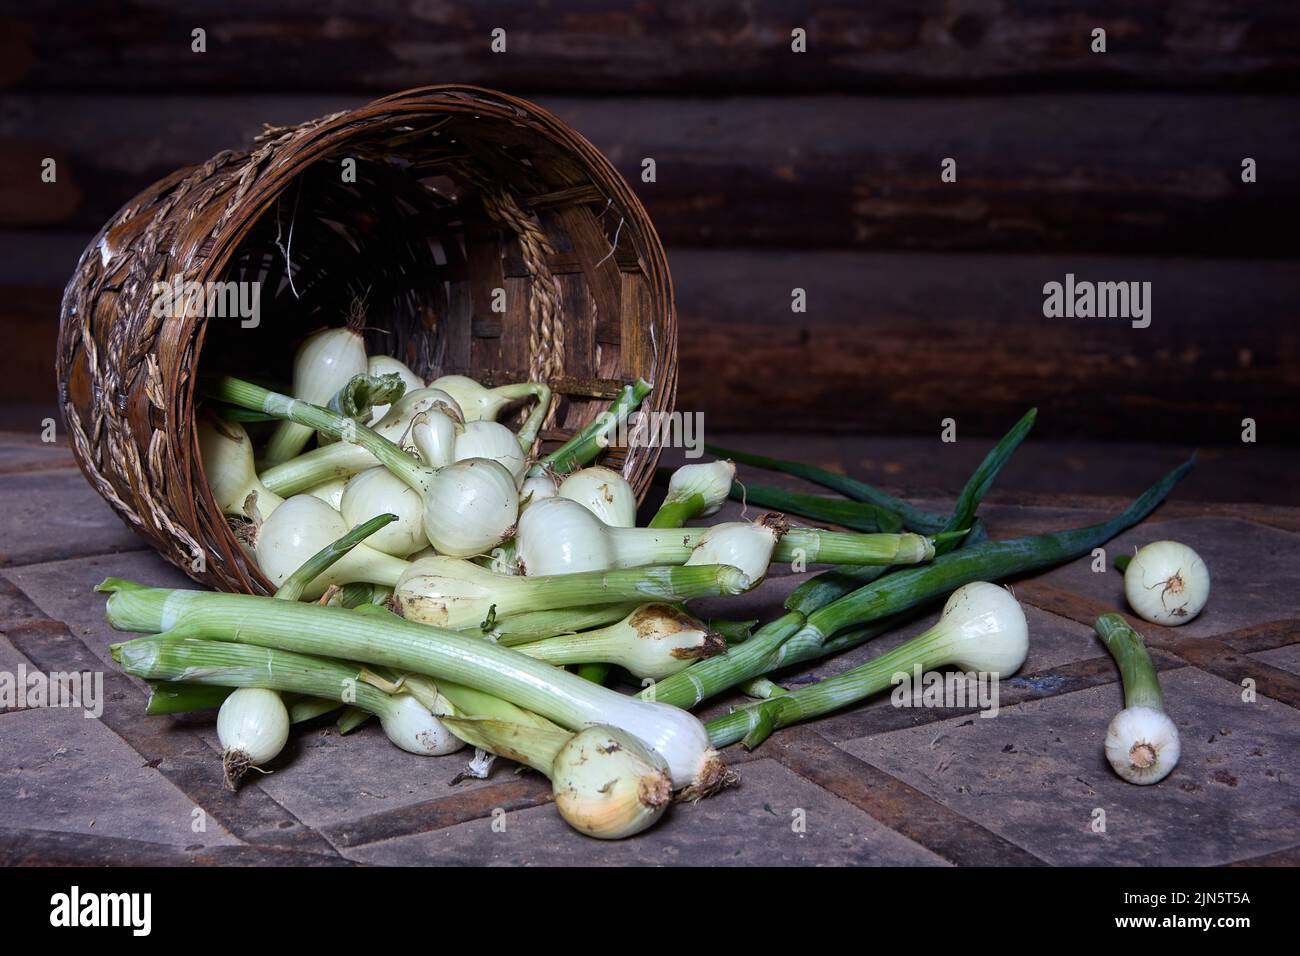 Cebollas verdes con bulbos de cebolla yacen sobre la mesa cerca de la canasta de mimbre. Foto de stock